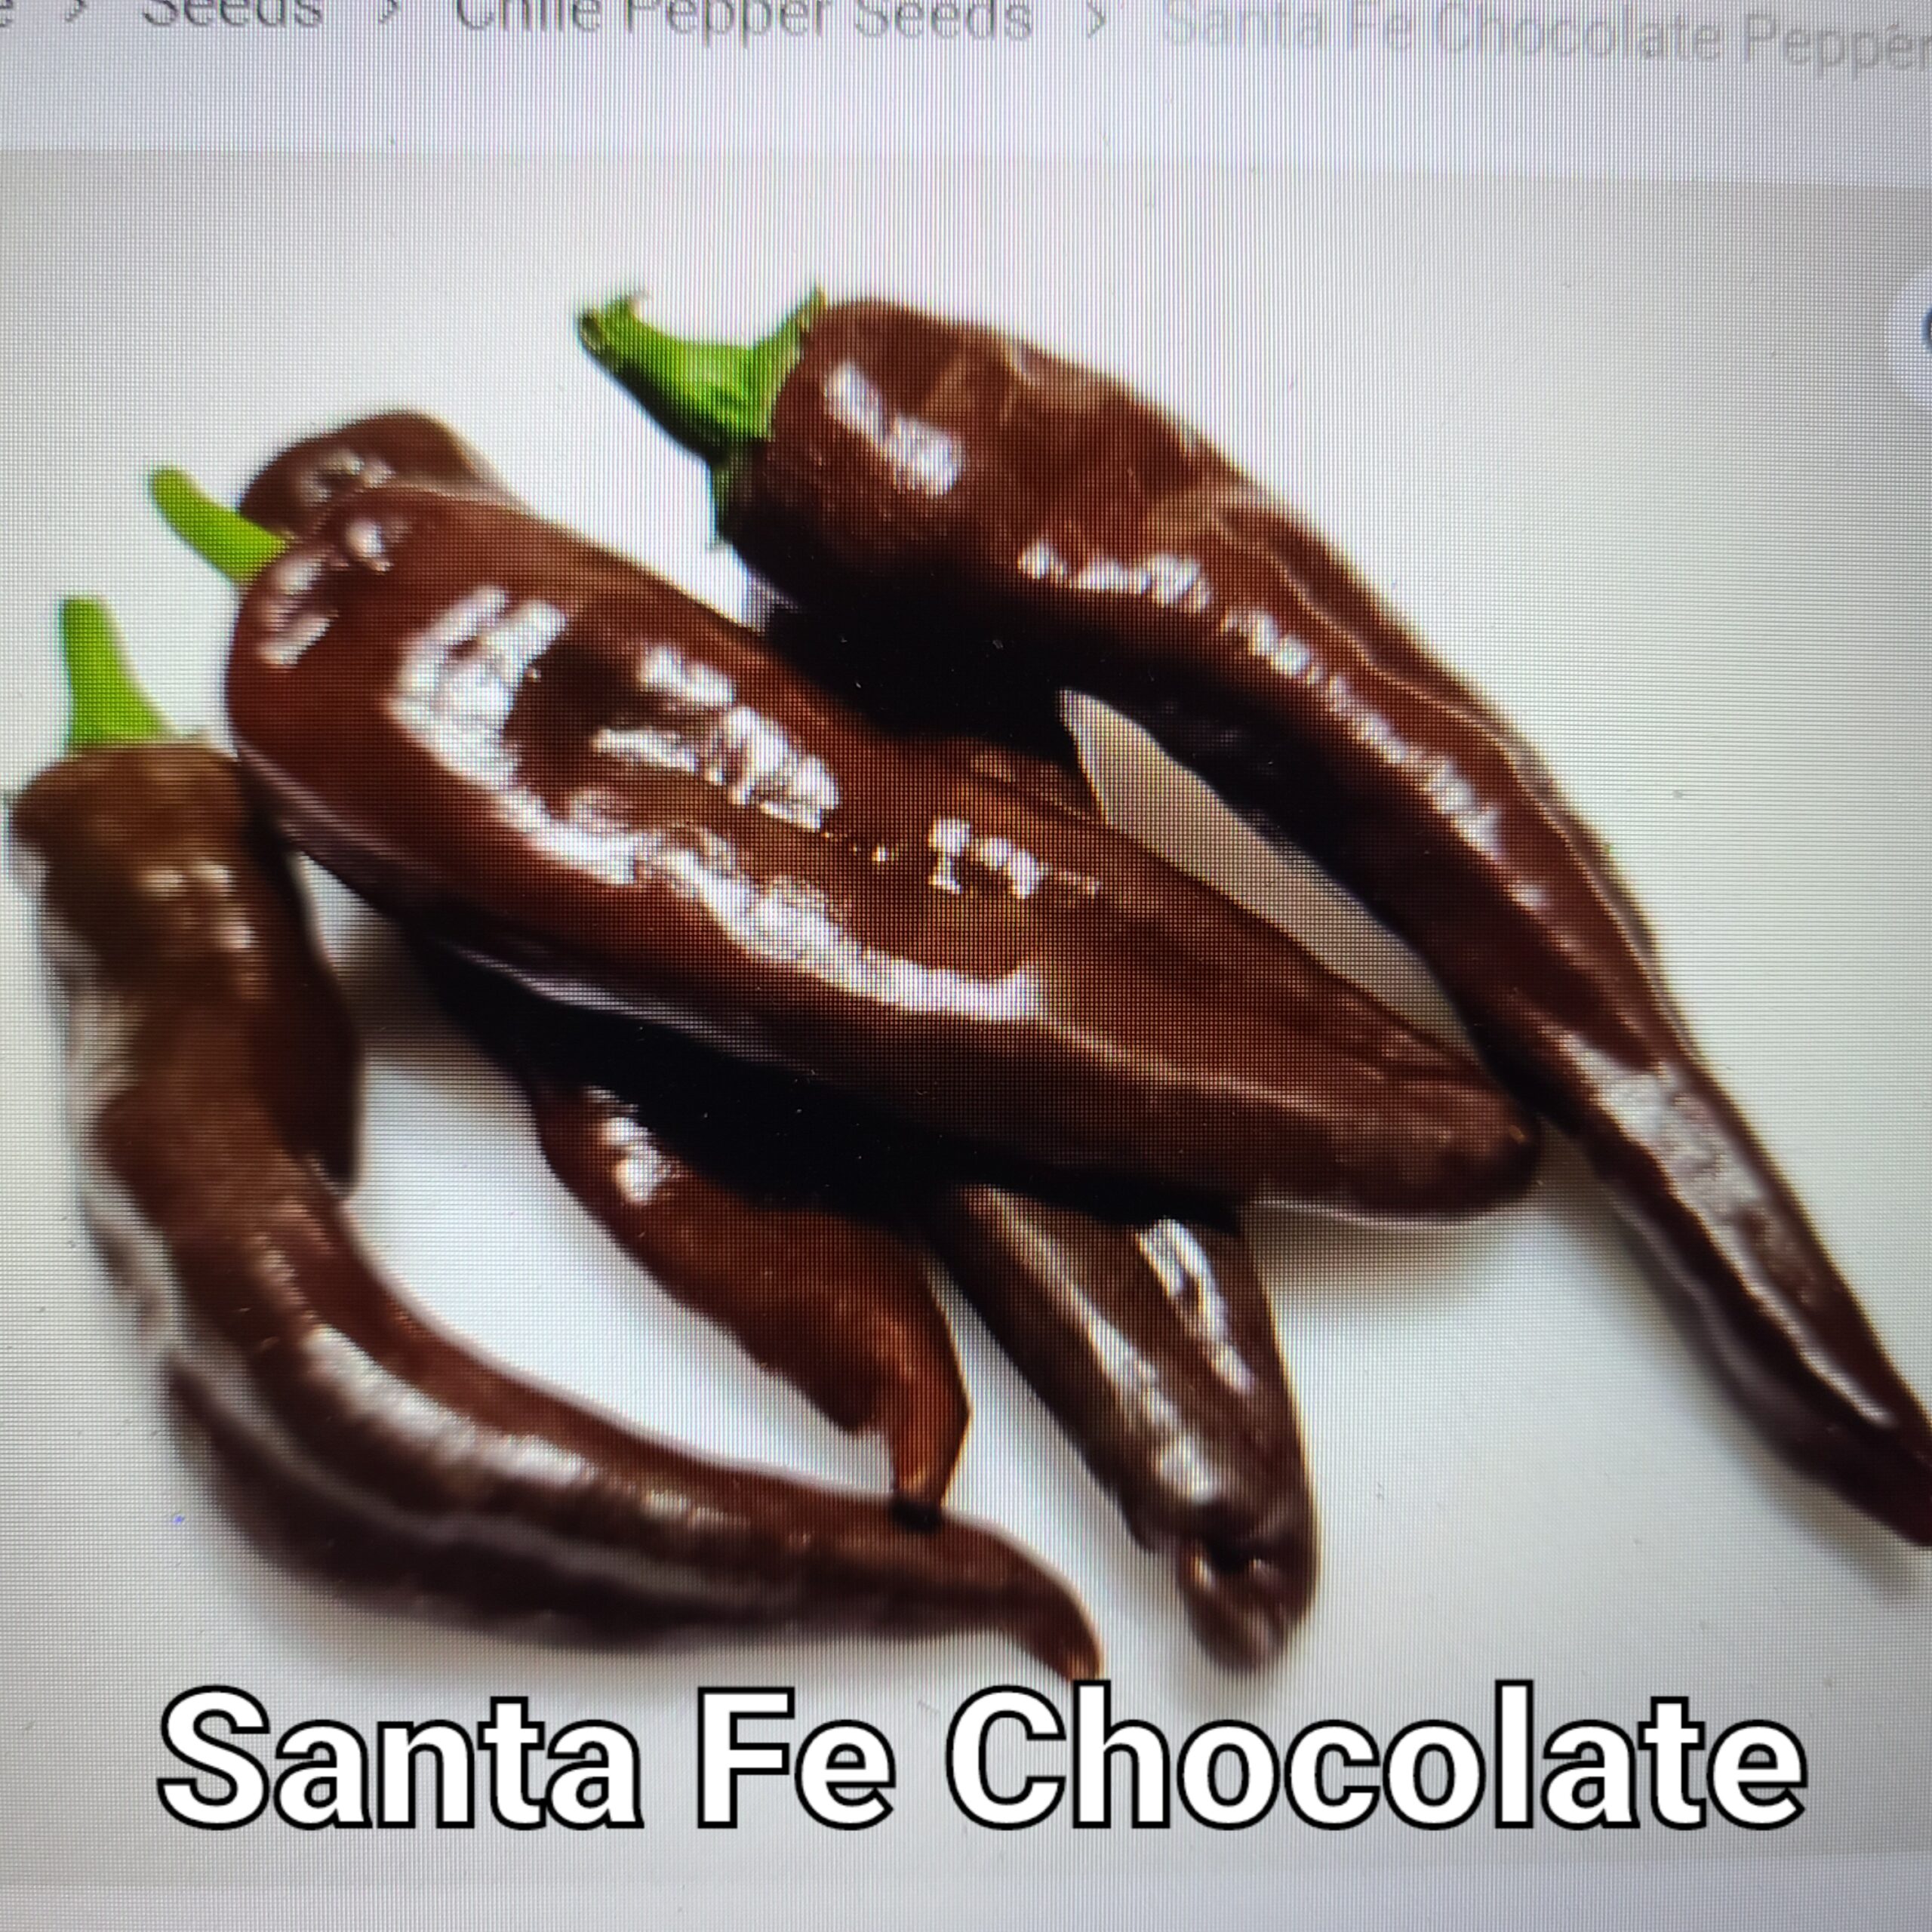 Santa Fe Chocolate ****